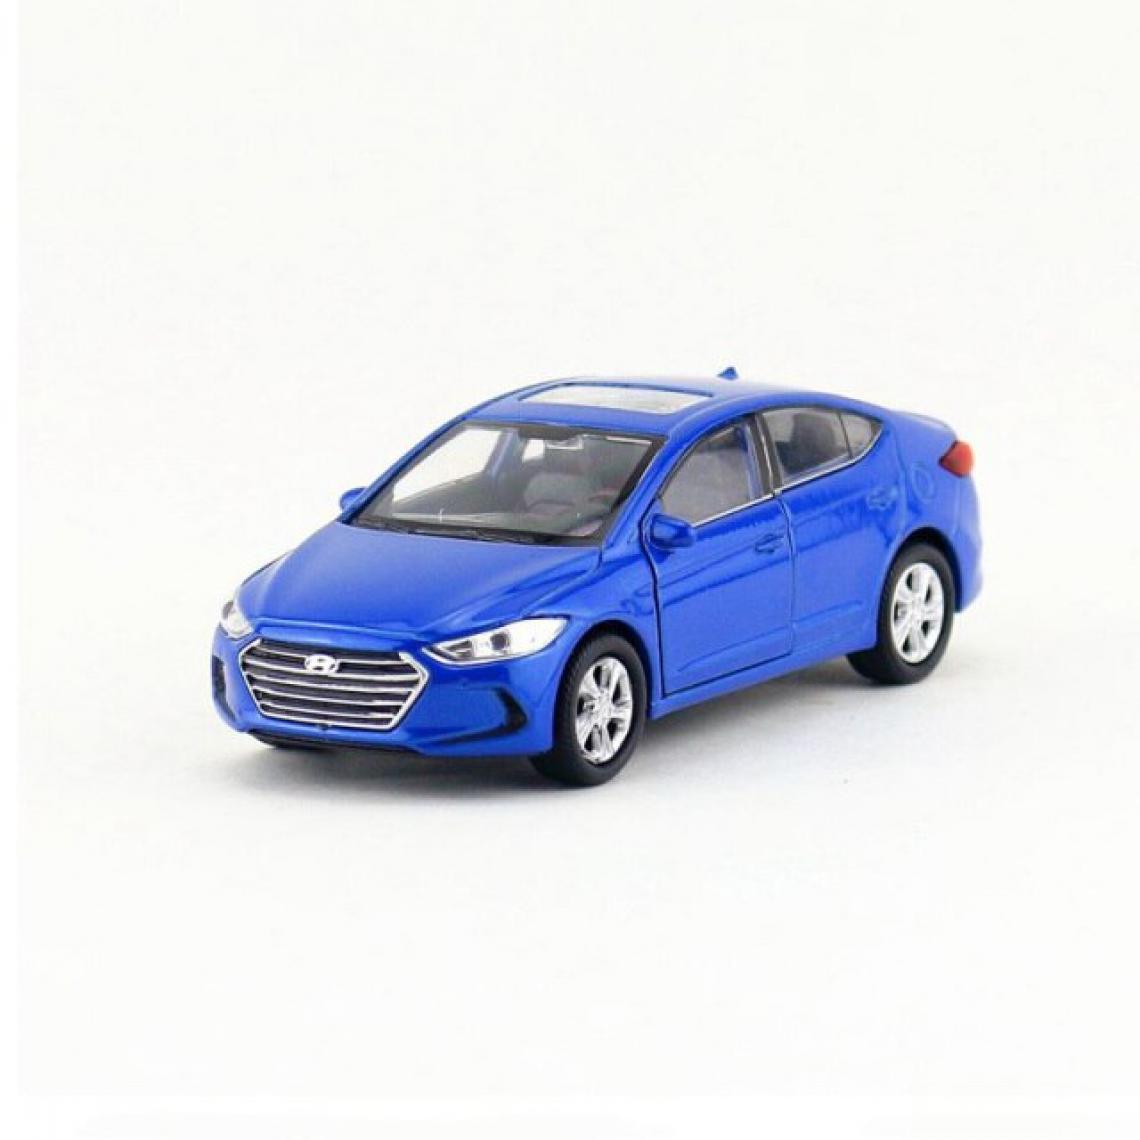 Universal - 1: 36 Voiture jouet moulée sous pression Modèle de voiture en métal moulé Collection de cadeaux Enfant tire en bleu(Bleu) - Voitures